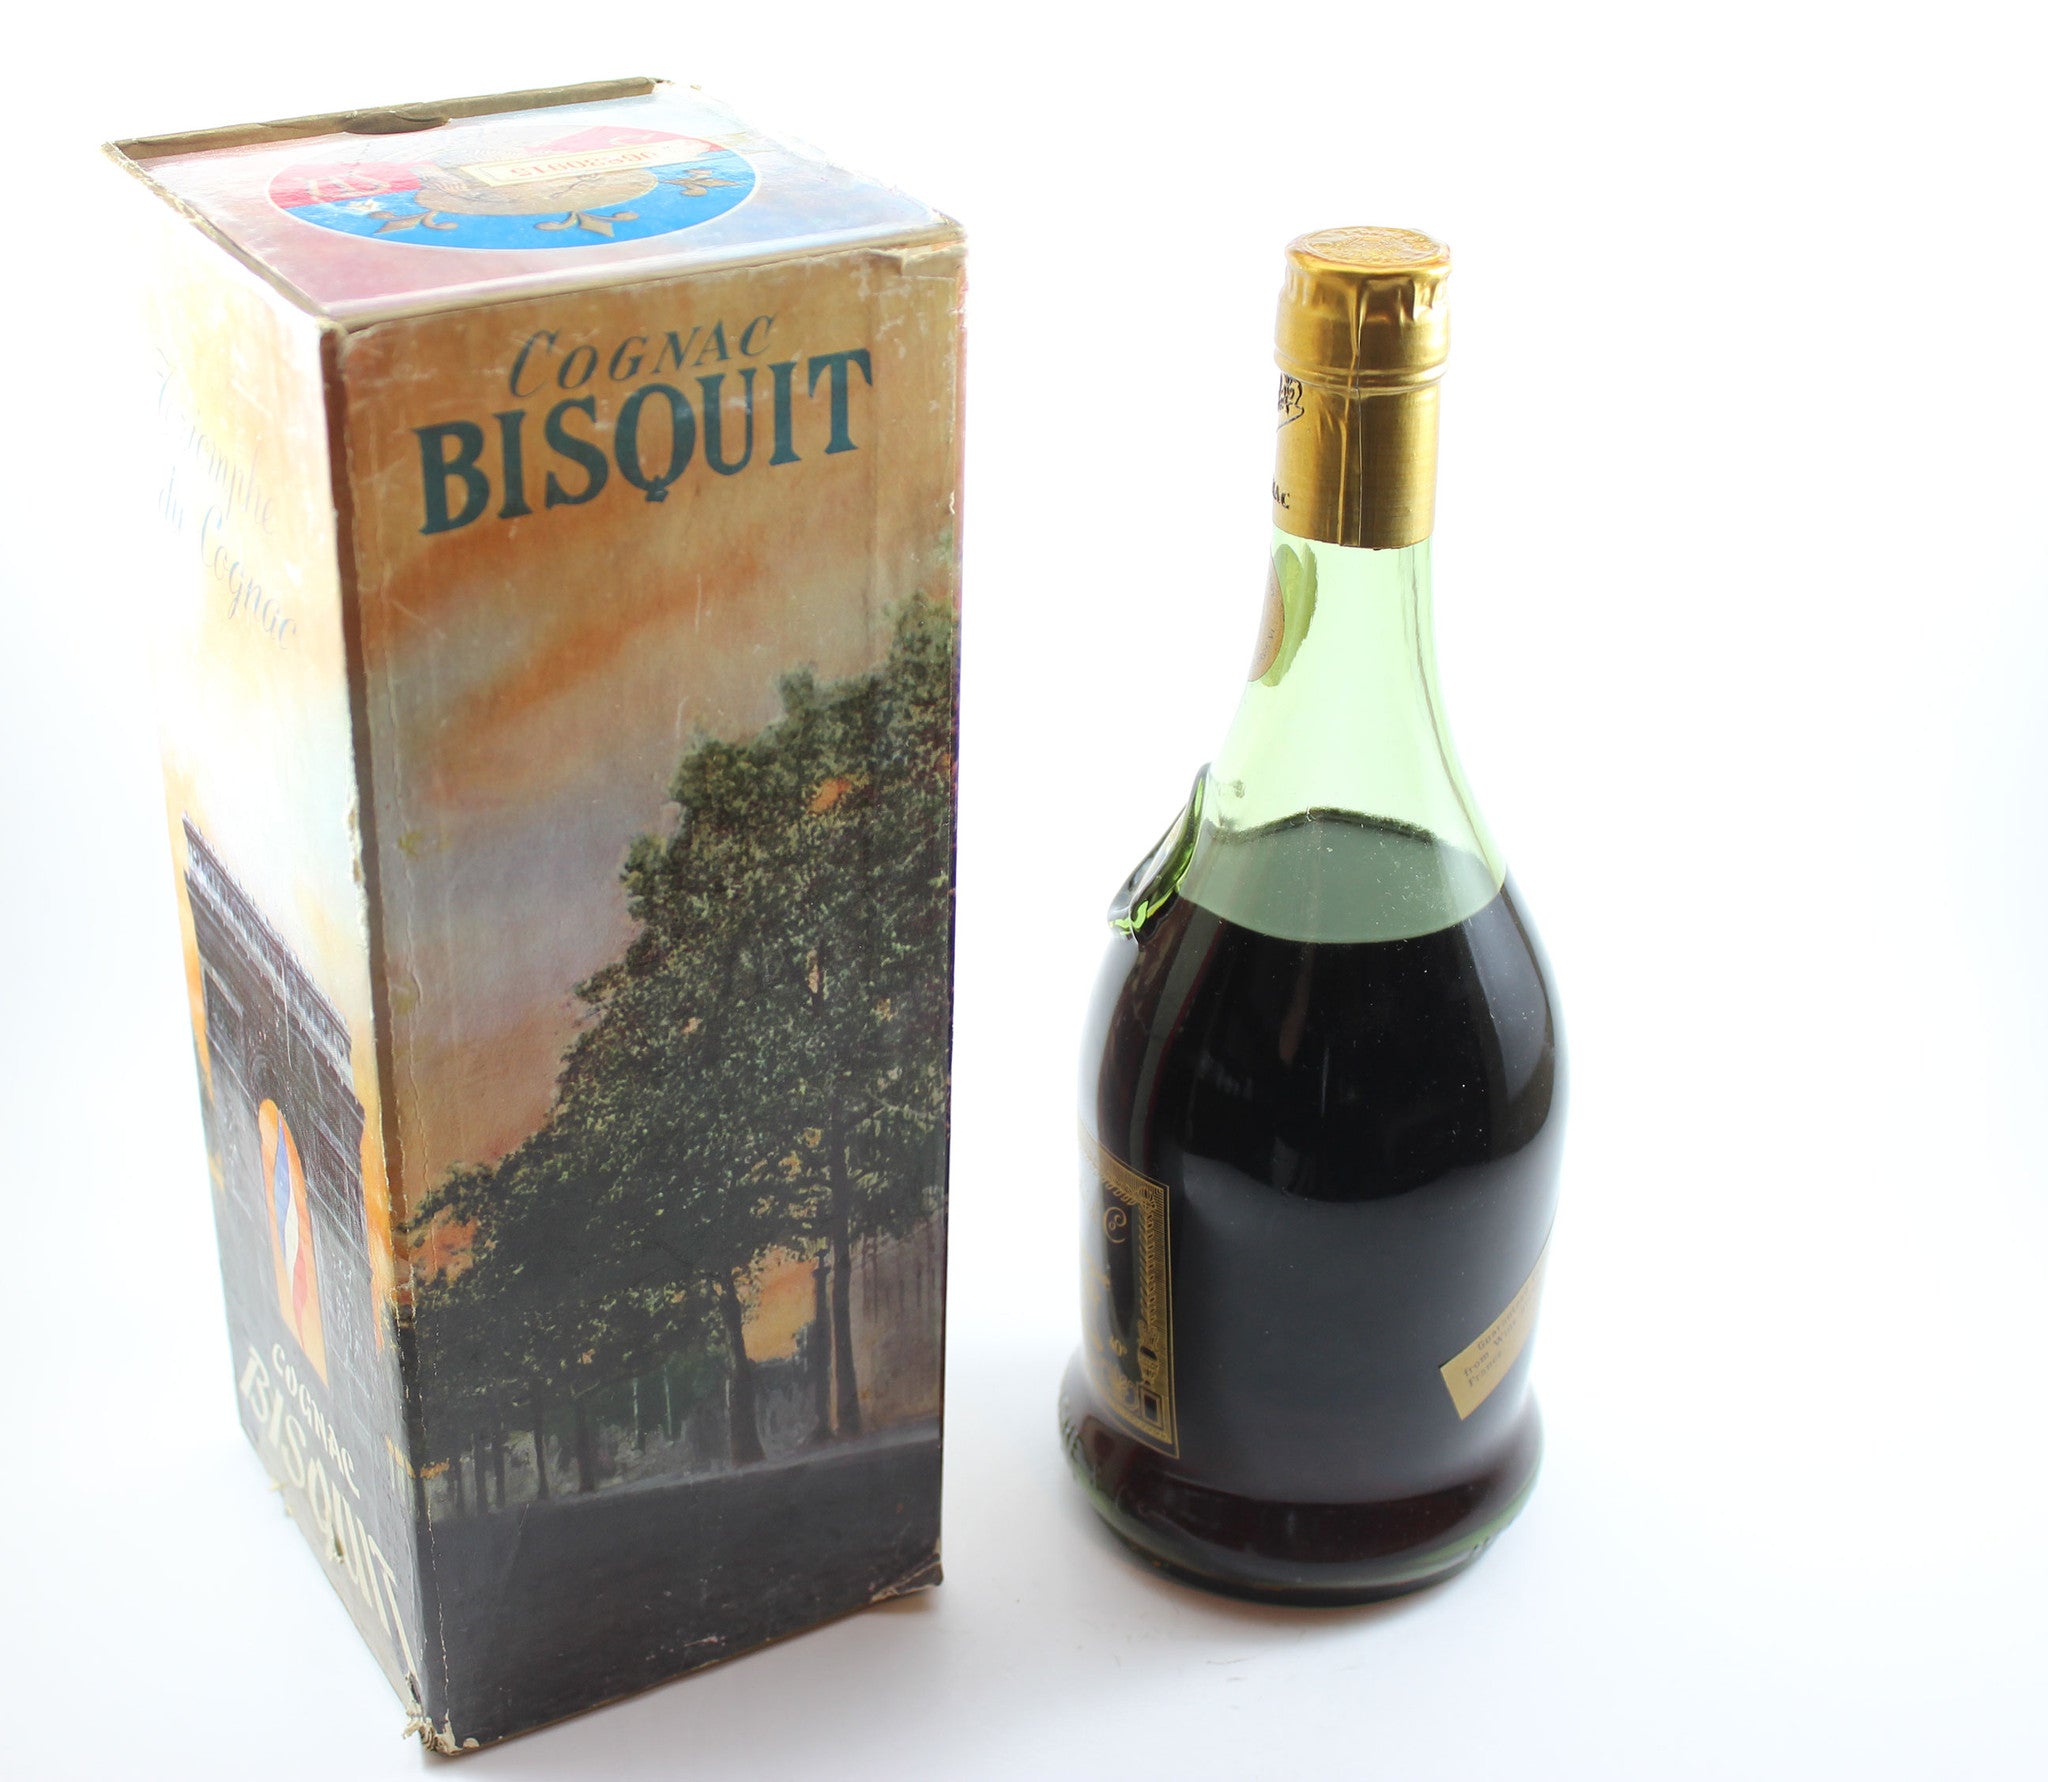 Bisquit Dubouché &amp; Co. Grande Fine Champagne Cognac, Extra Vieille